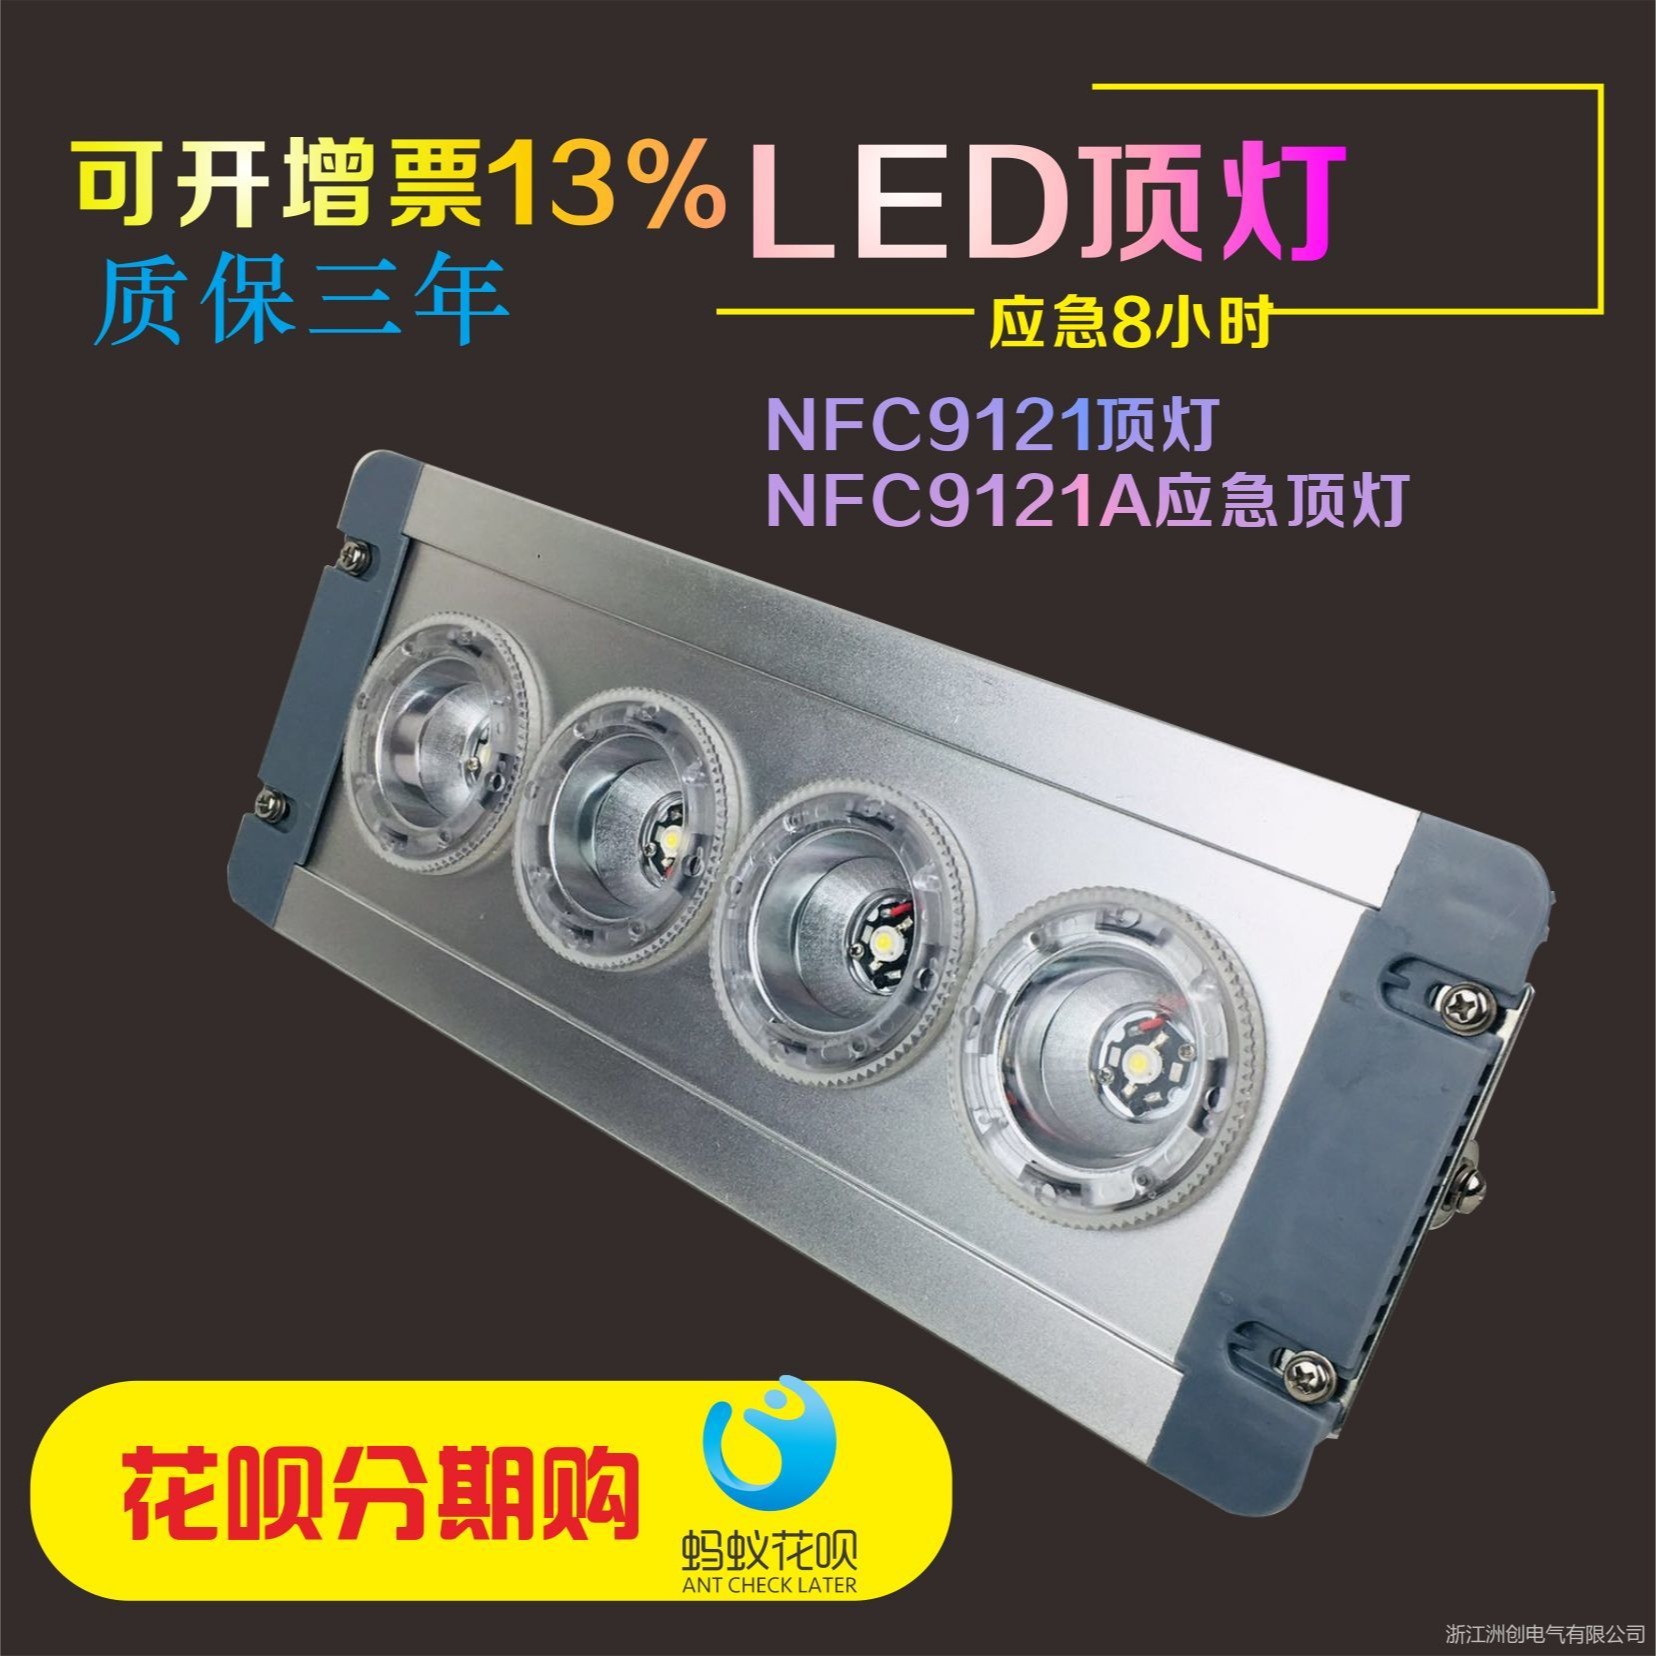 NFC9121_NFC9121_NFC9121系列LED低顶灯  LED固态应急照明灯 NFC9121_NFC9121_